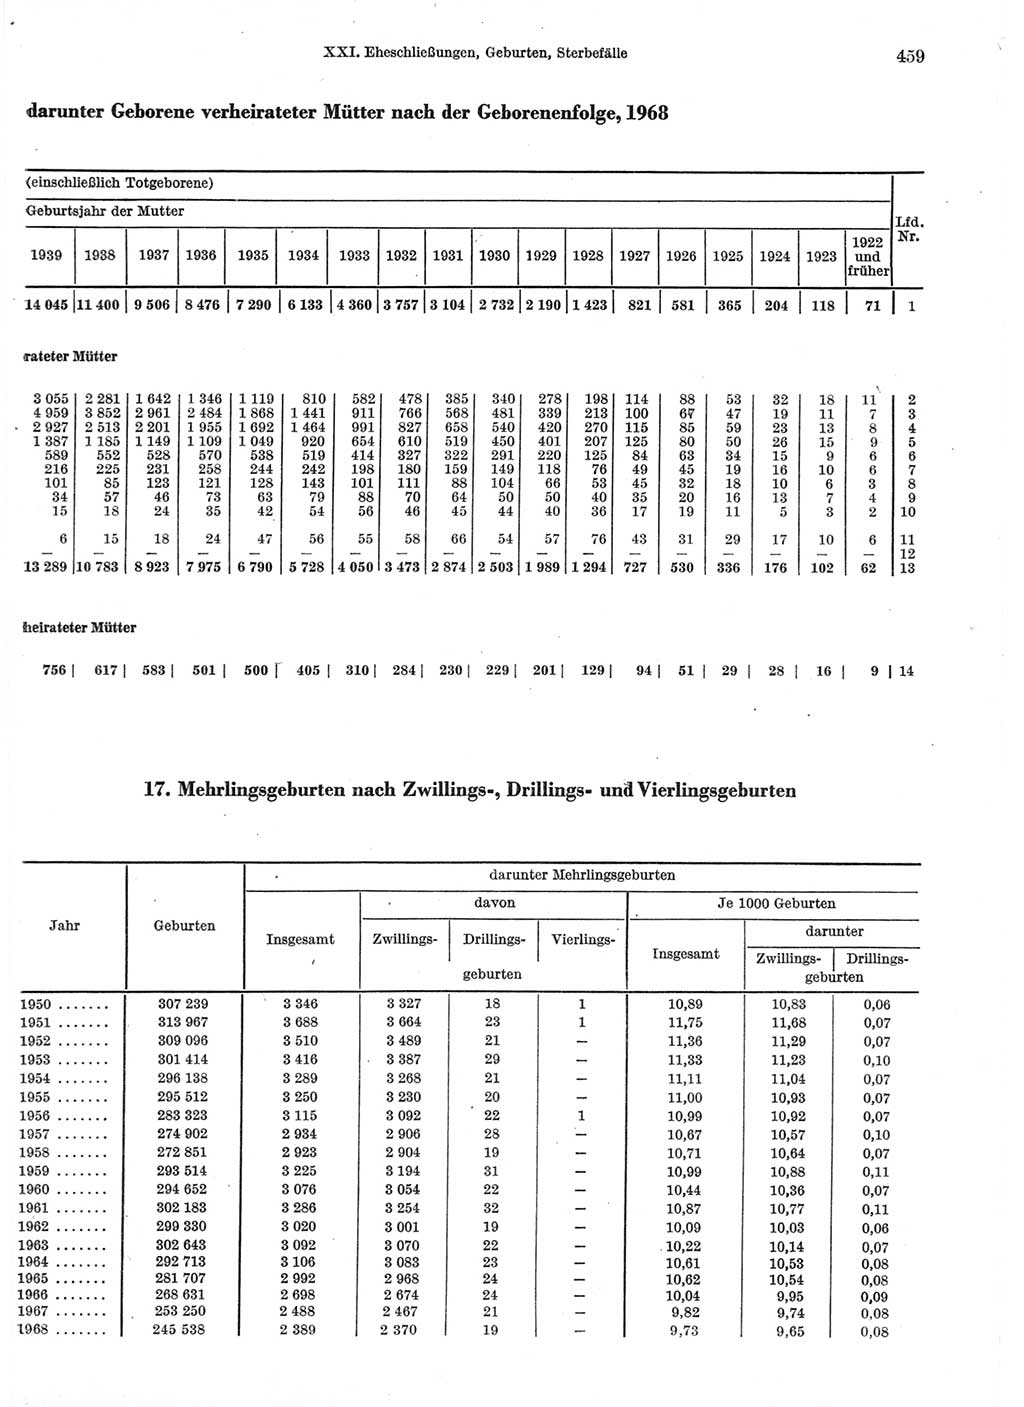 Statistisches Jahrbuch der Deutschen Demokratischen Republik (DDR) 1970, Seite 459 (Stat. Jb. DDR 1970, S. 459)